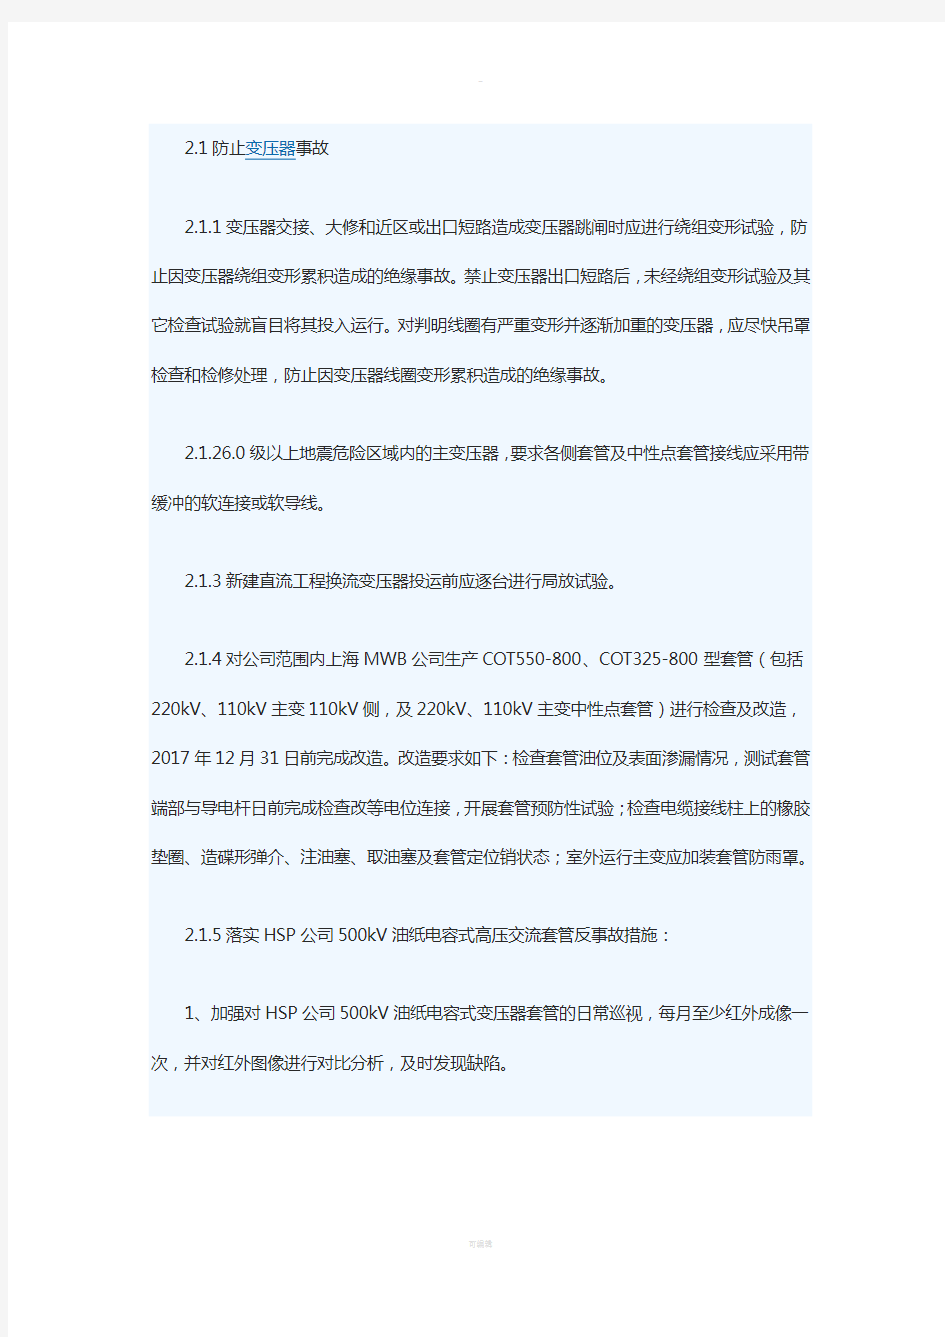 中国南方电网公司反事故措施(2017年版)